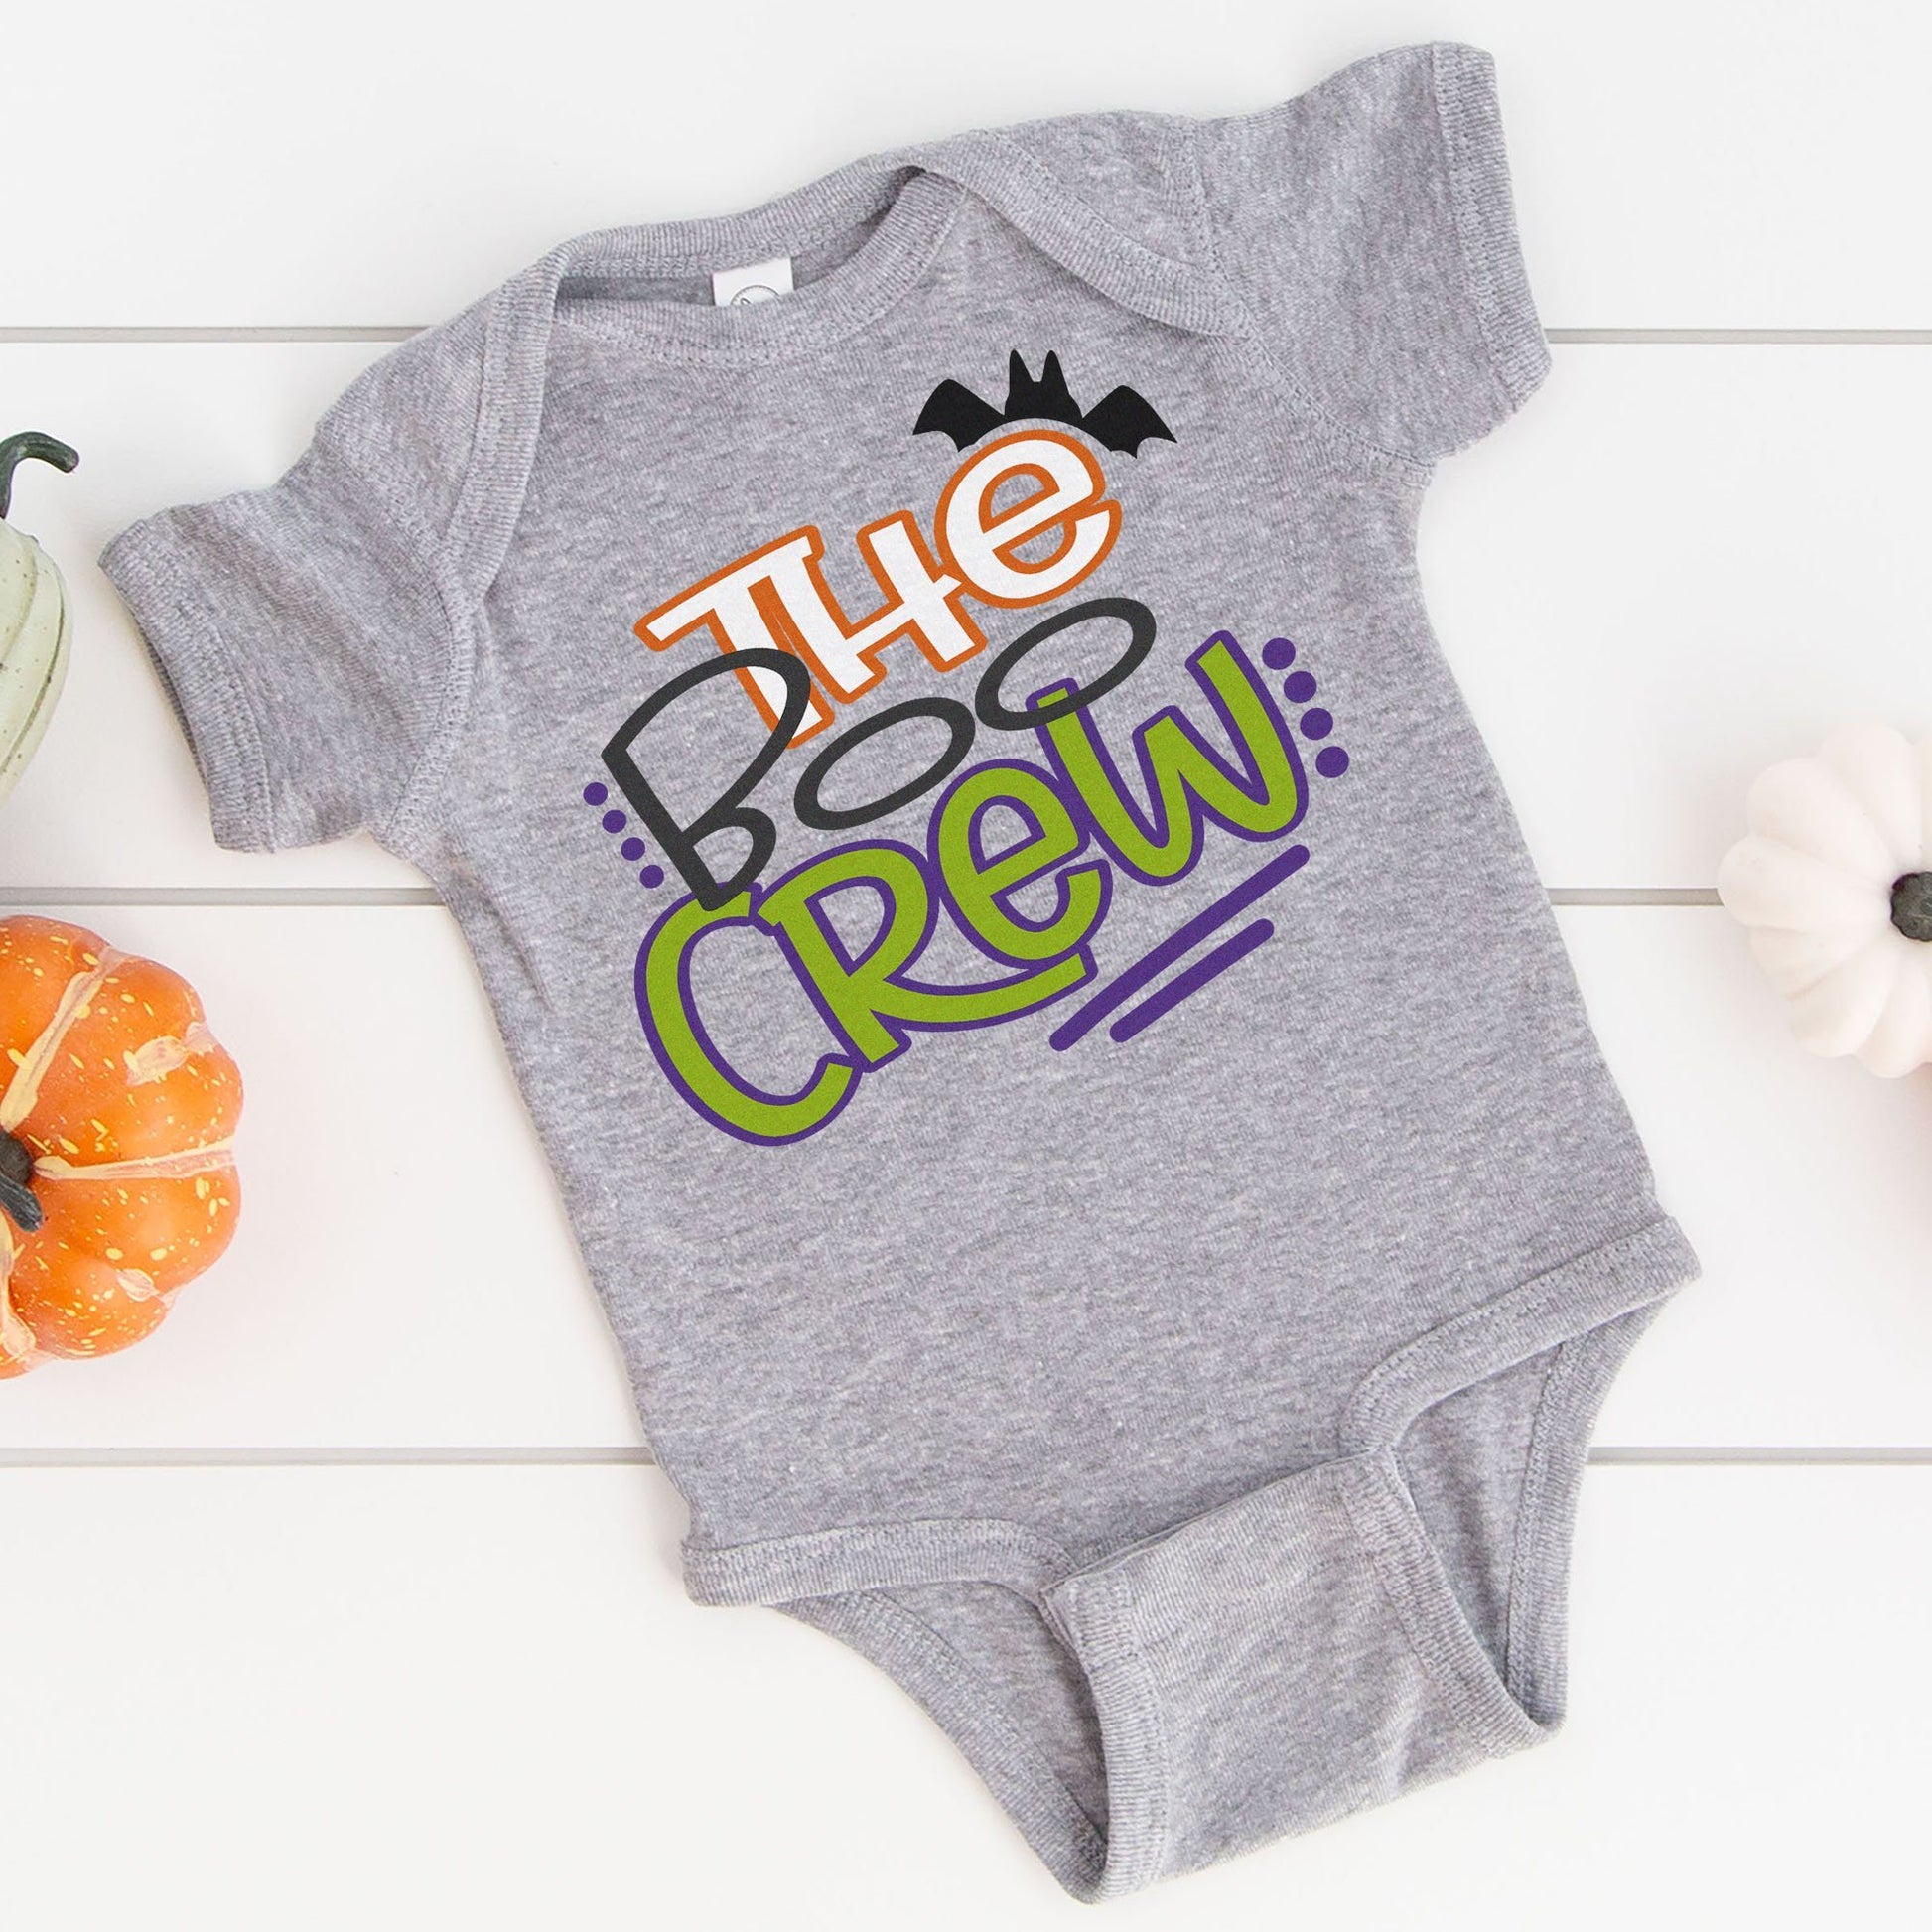 The Boo Crew Kids & Babies Tops